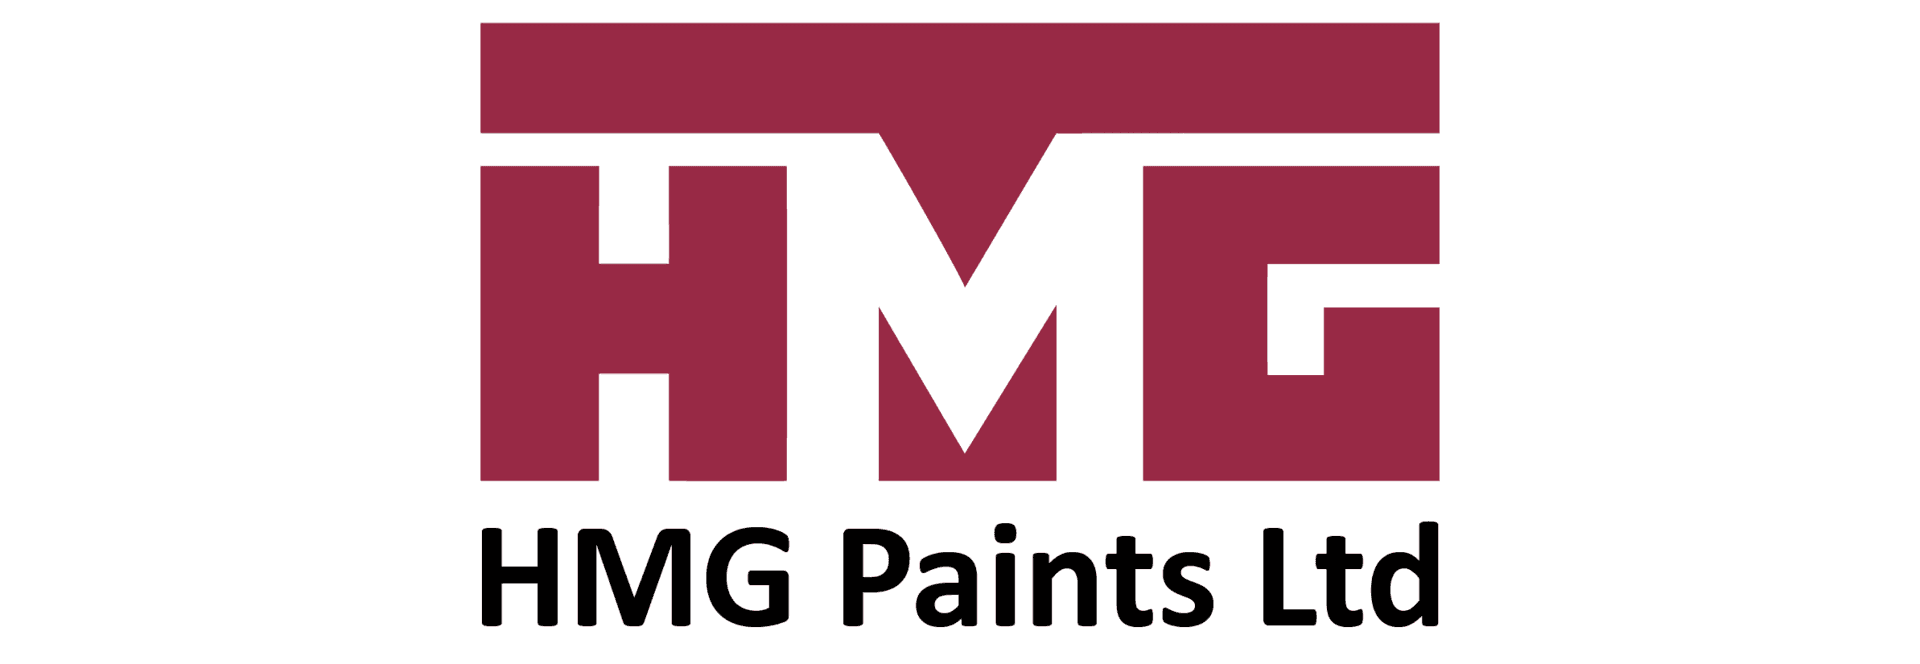 hmg paint